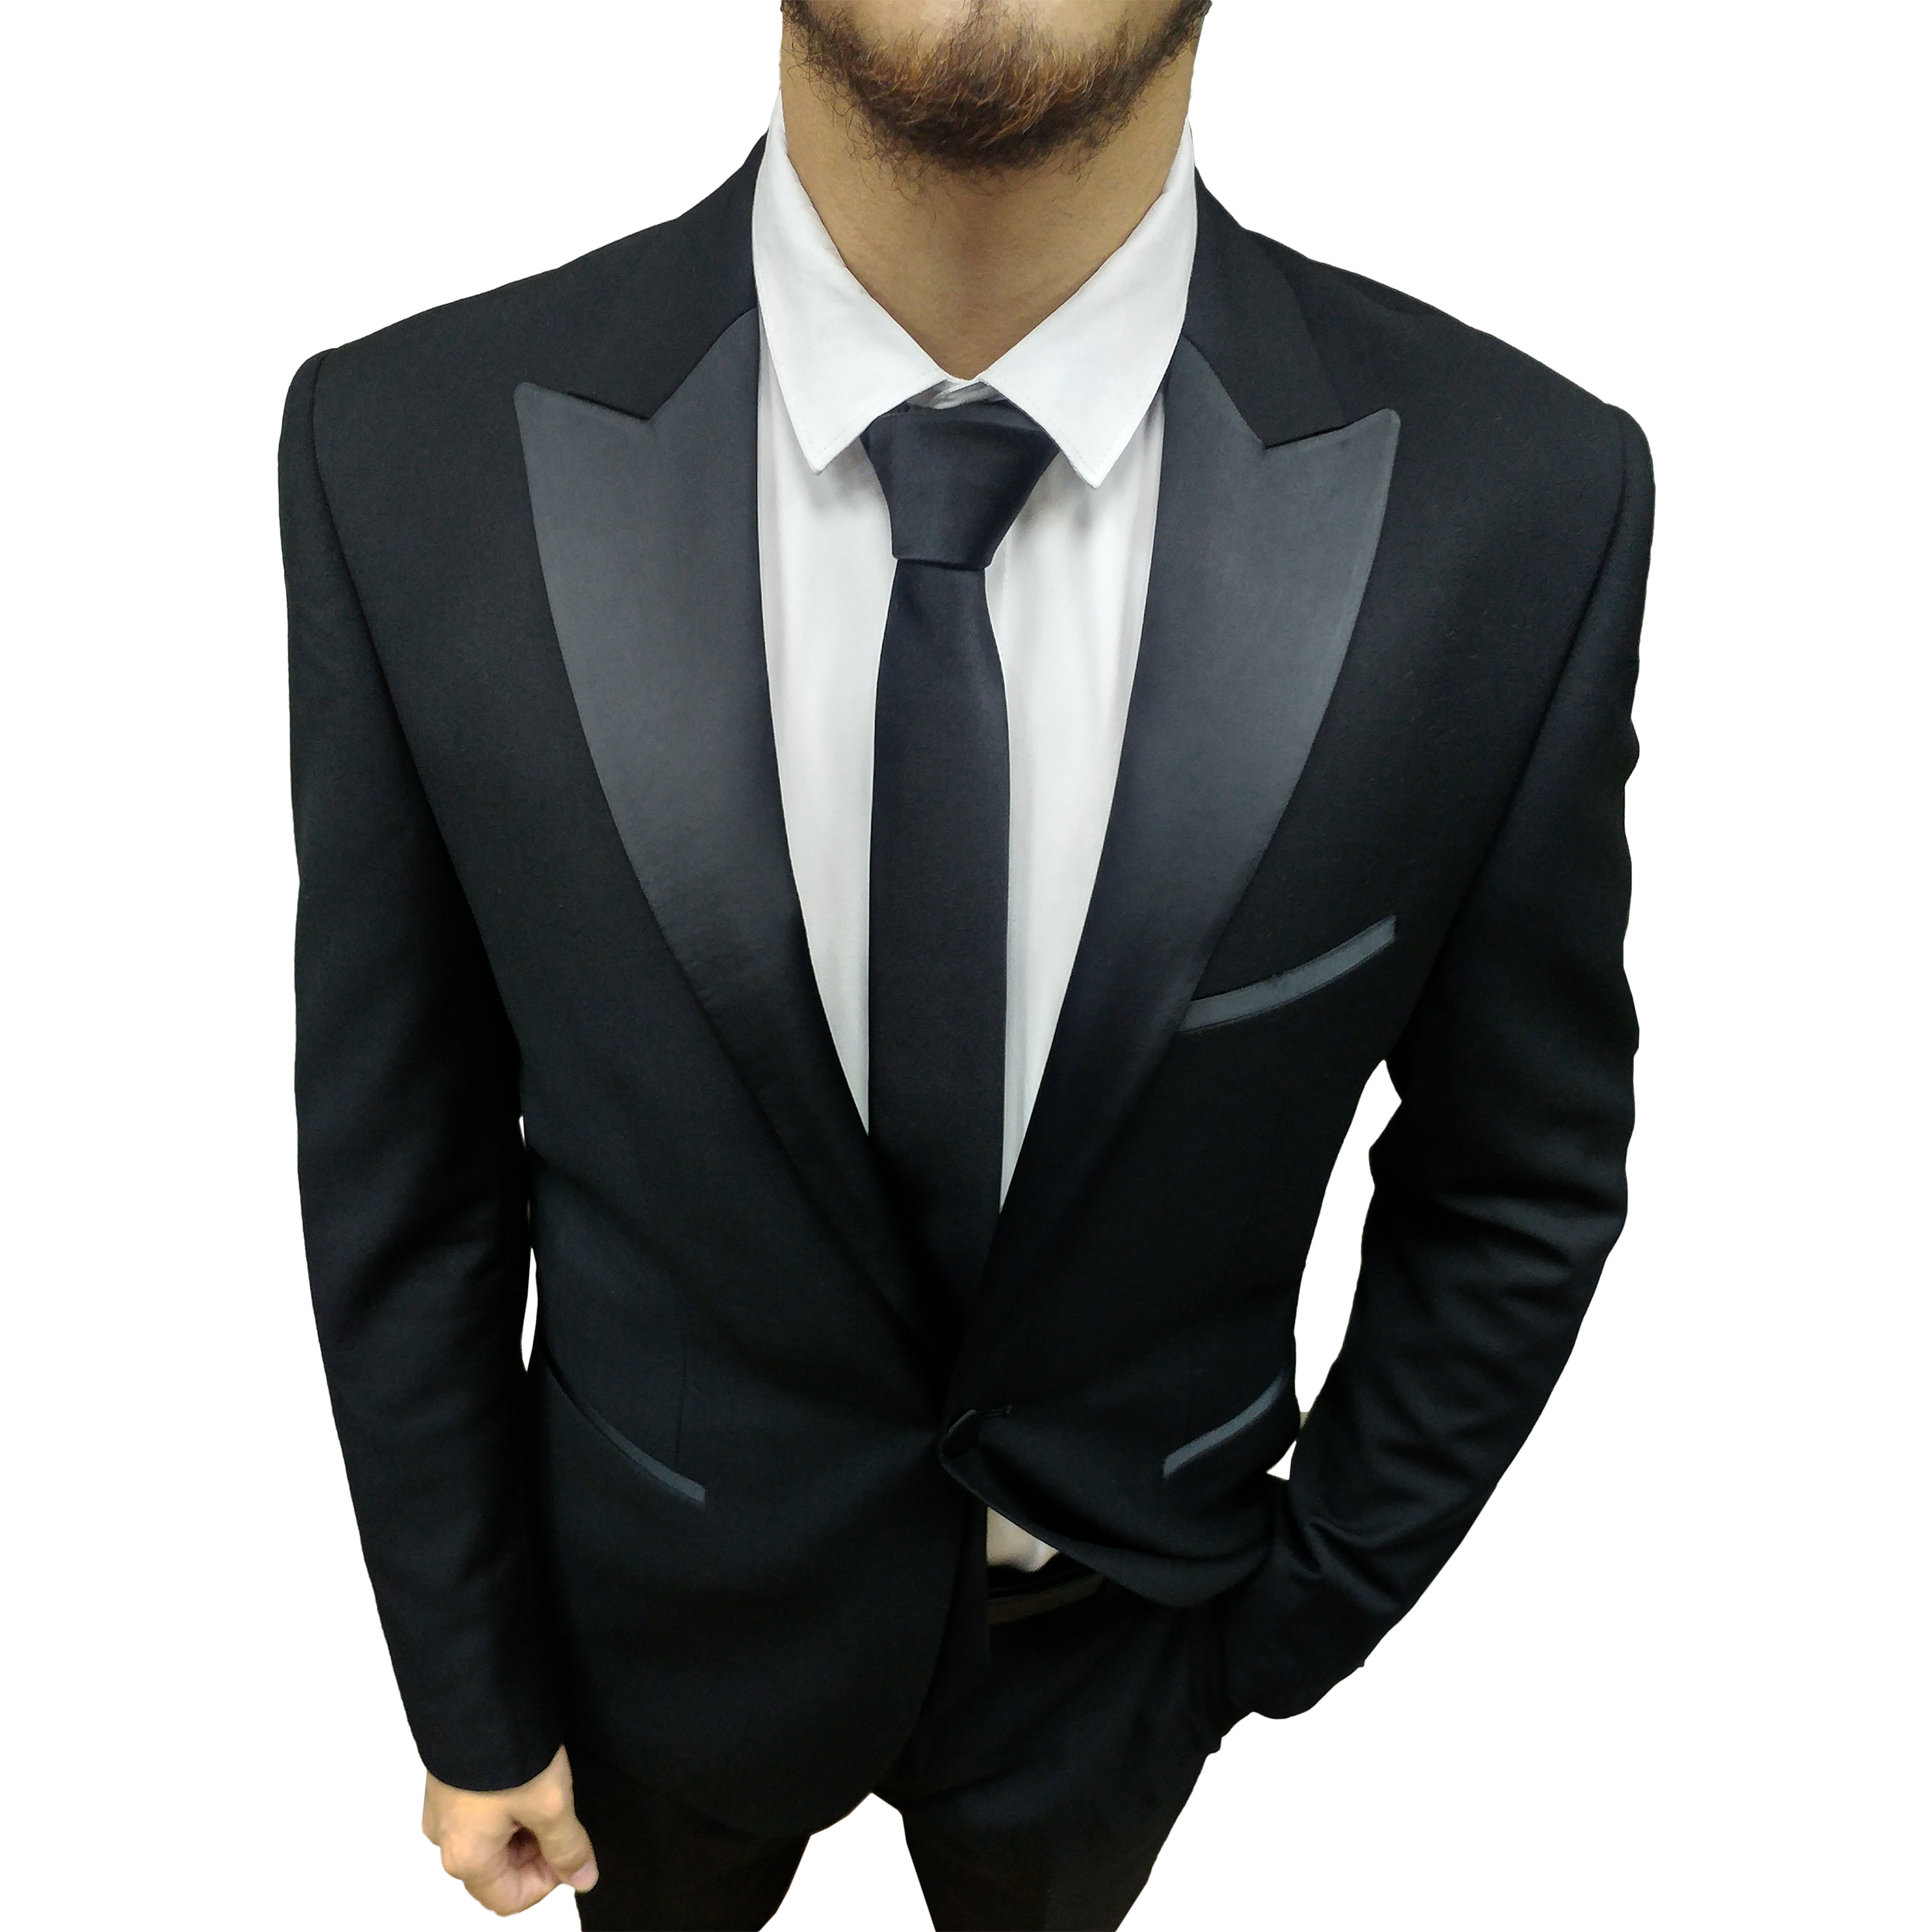  ست کراوات و پاپیون و دستمال جیب مردانه کد B3 -  - 7